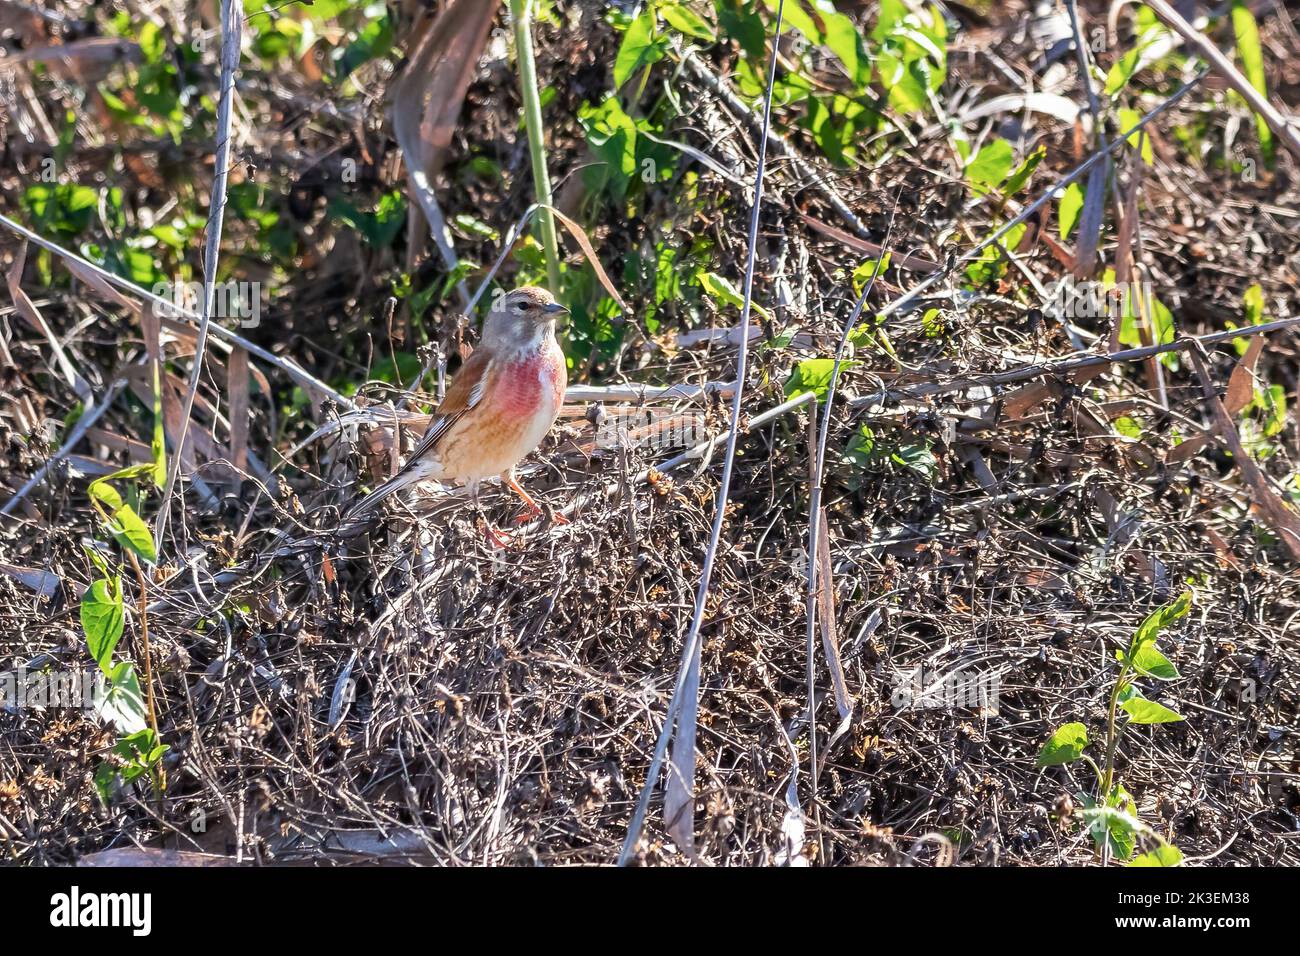 Il linnet eurasiatico (linaria cannabina) è un piccolo uccello passerino della famiglia delle pinne, Fringillidae. Foto Stock